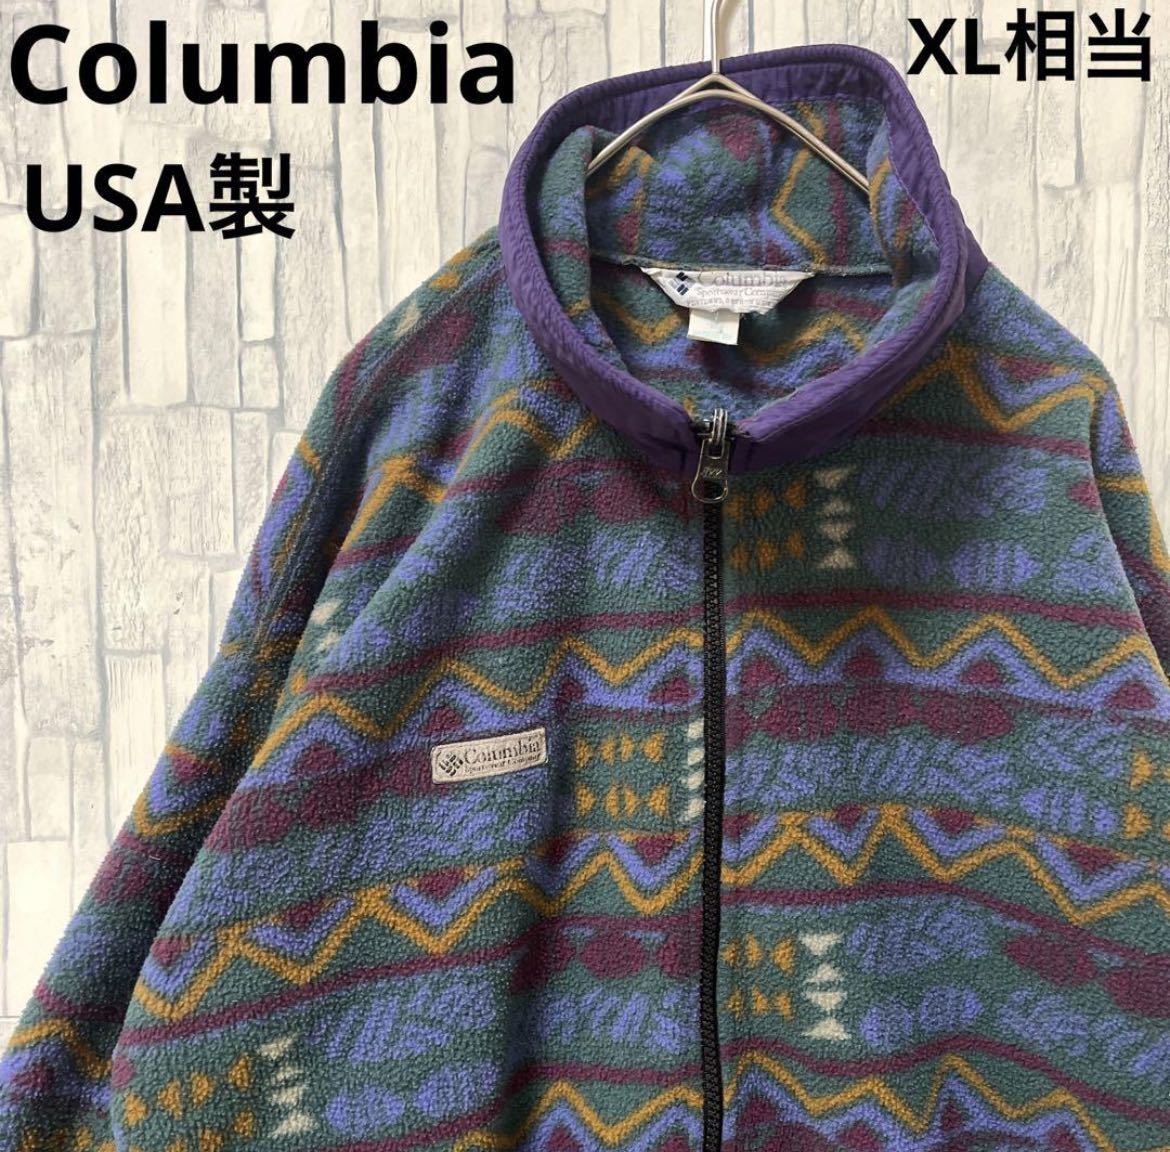 Columbia コロンビア デザイン フリース ジャケット ブルゾン 長袖 サイズM 90s 90年代 総柄 ネイティブ柄 アート柄 USA製 送料無料